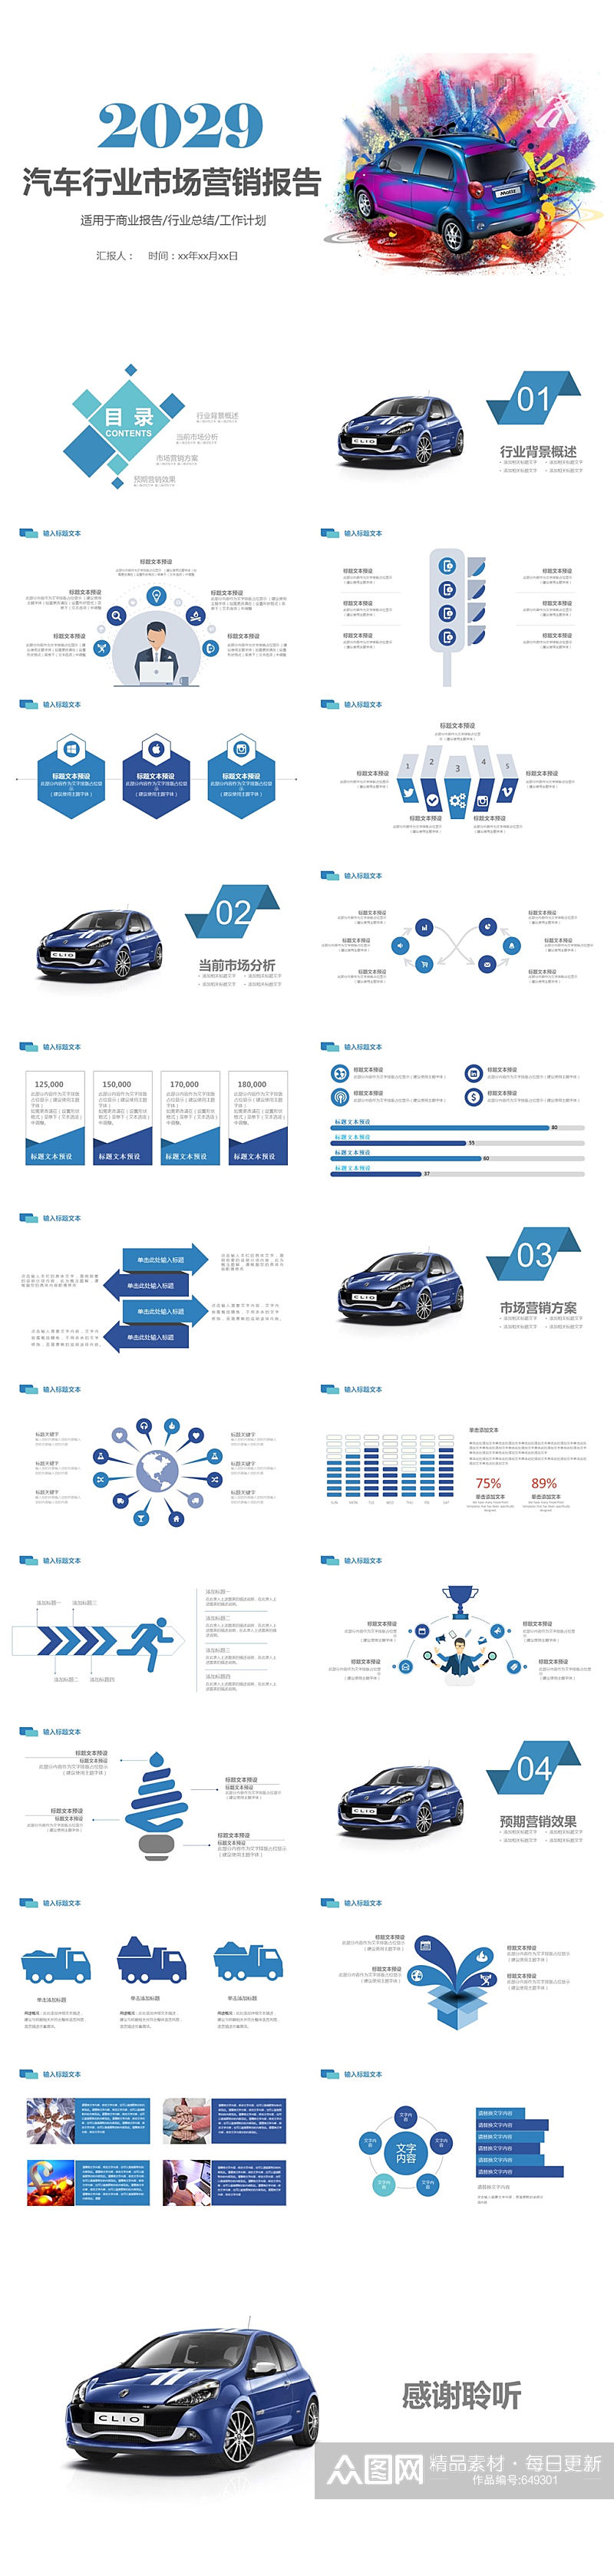 汽车行业市场营销报告PPT模板素材